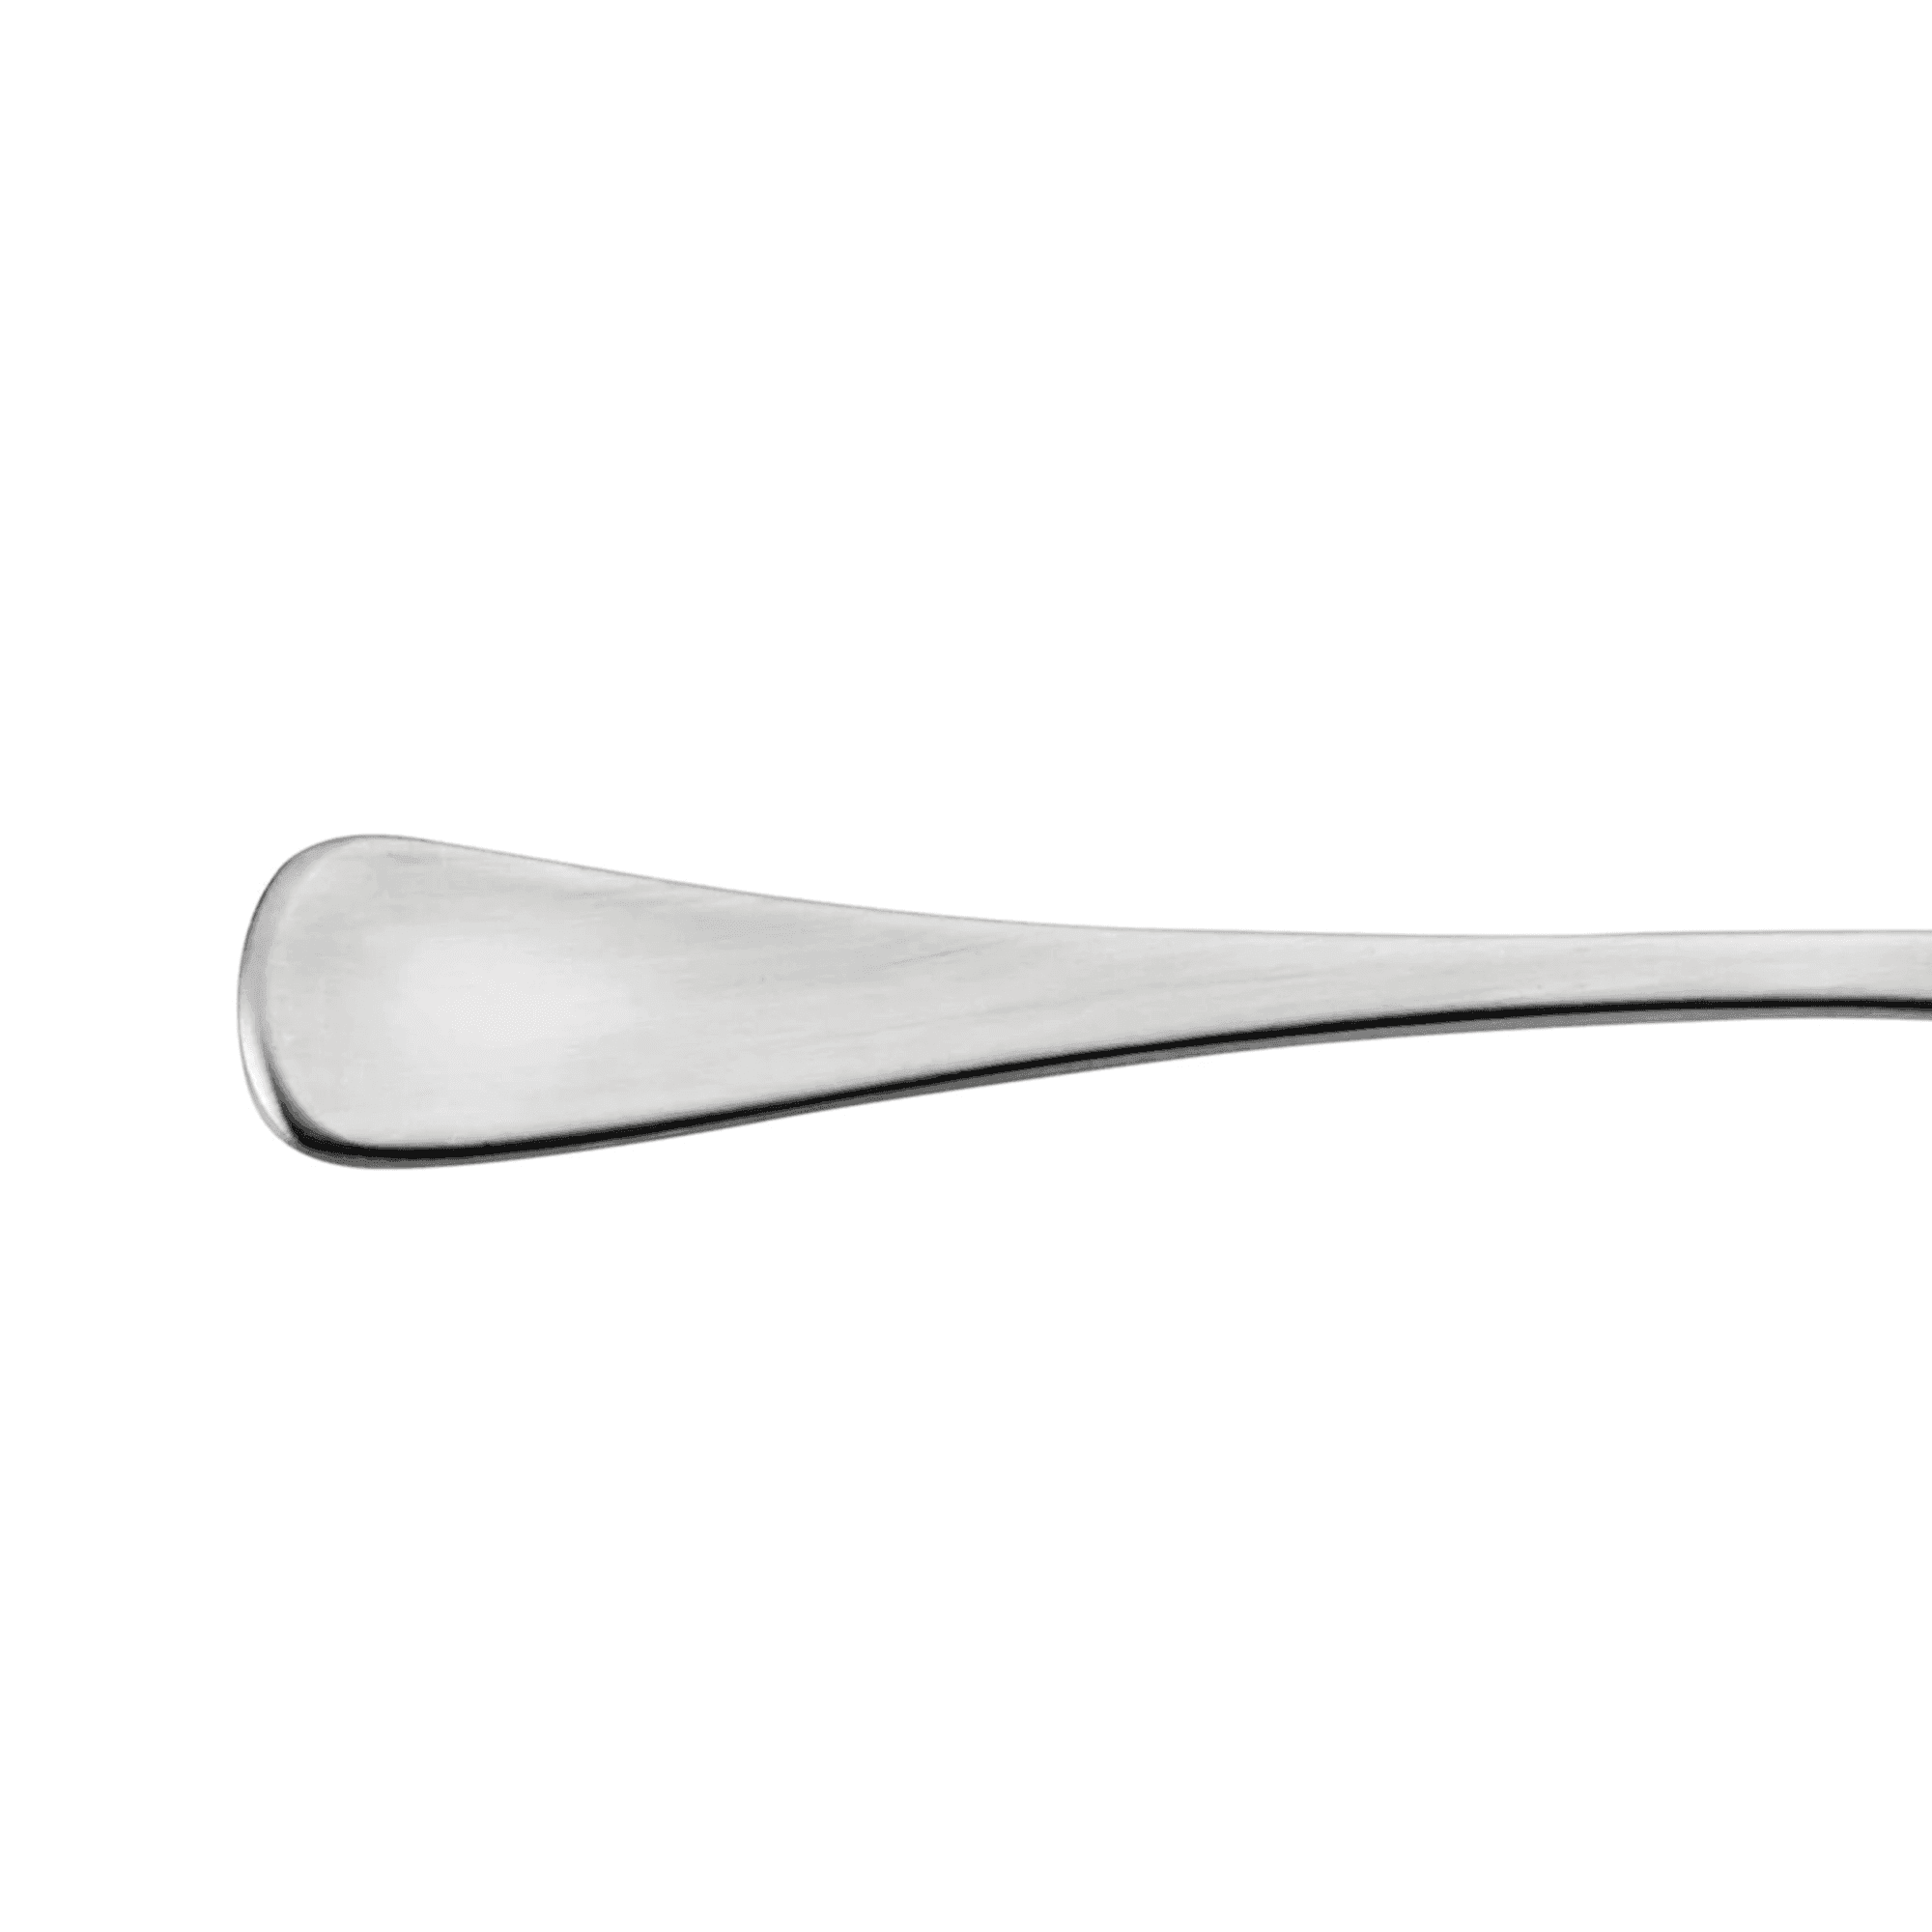 Stanley Rogers Metropolitan Rice Serving Spoon Image 4